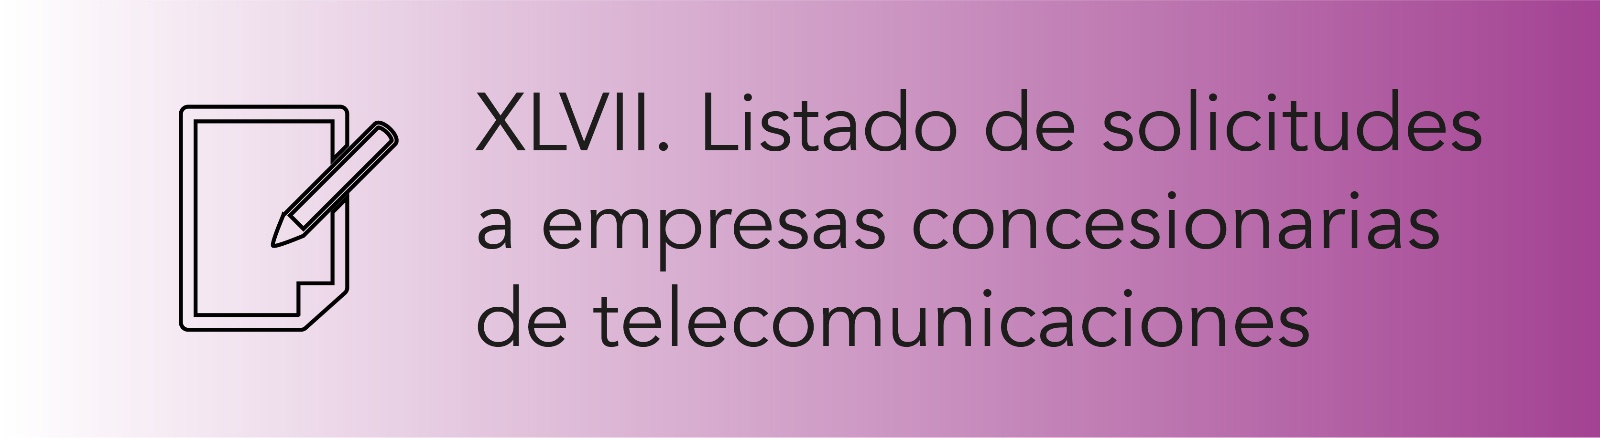 Imagen que permite conocer el Listado de solicitudes a empresas concesionarias de Telecomunicaciones